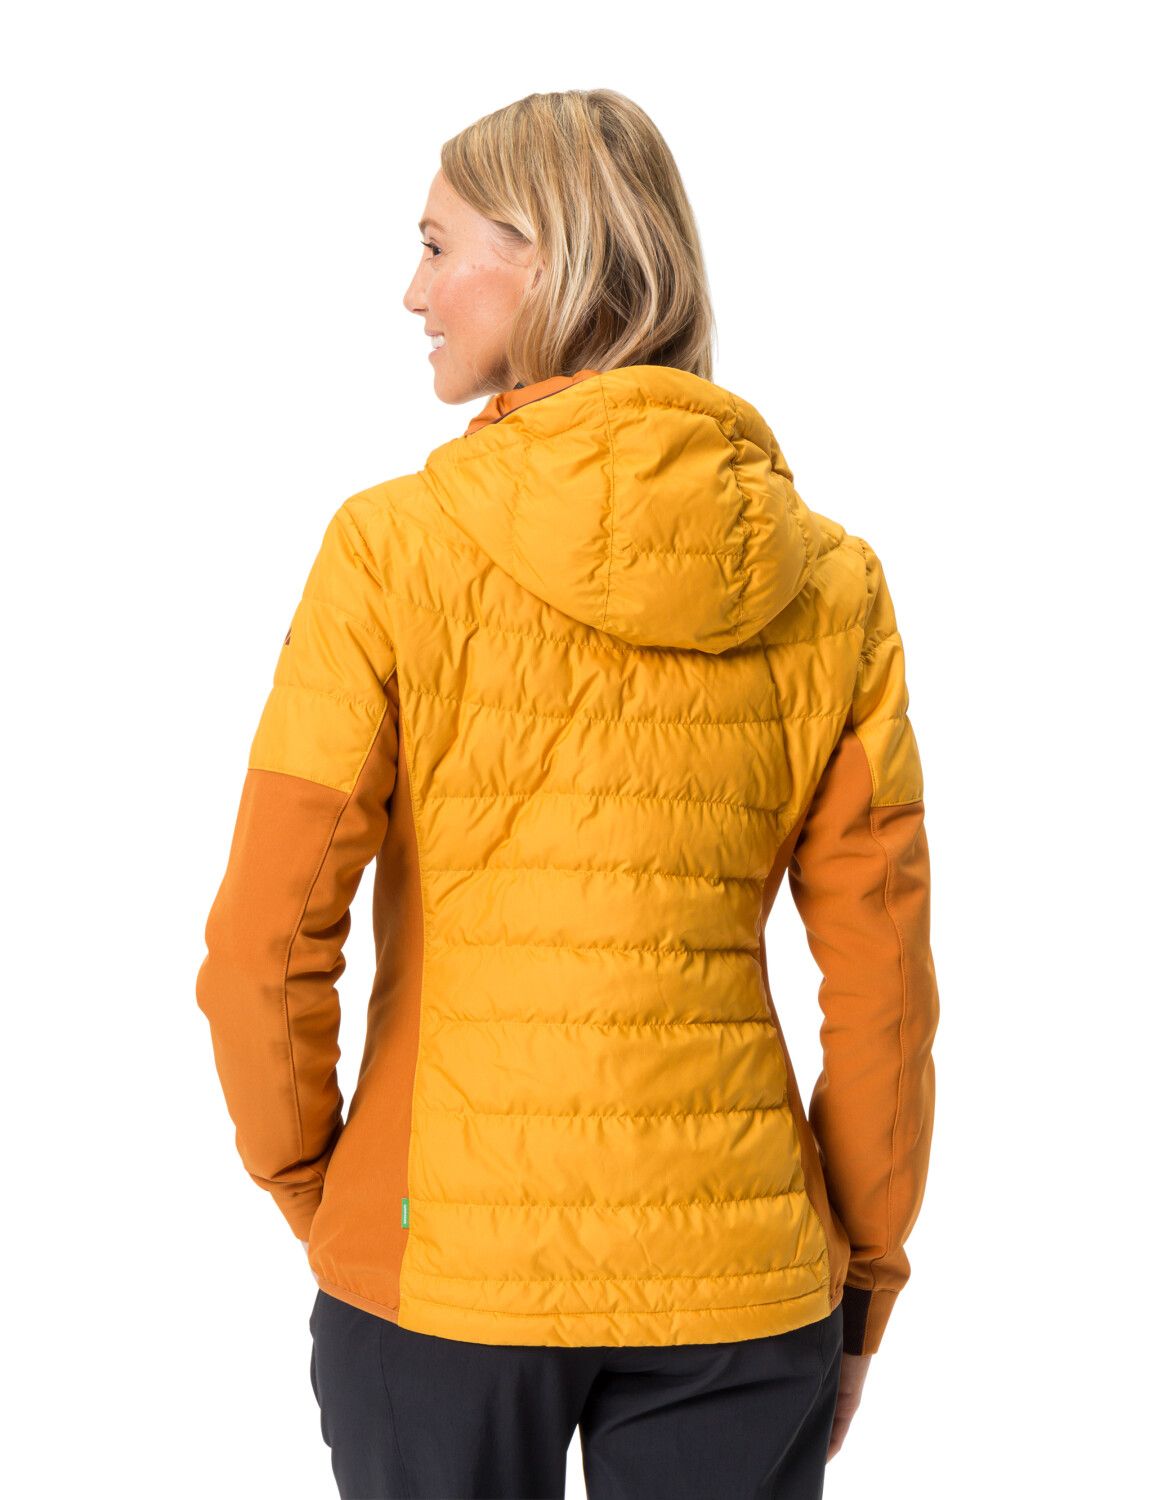 Bild von Alltricks Women's Elope Hybrid Jacket